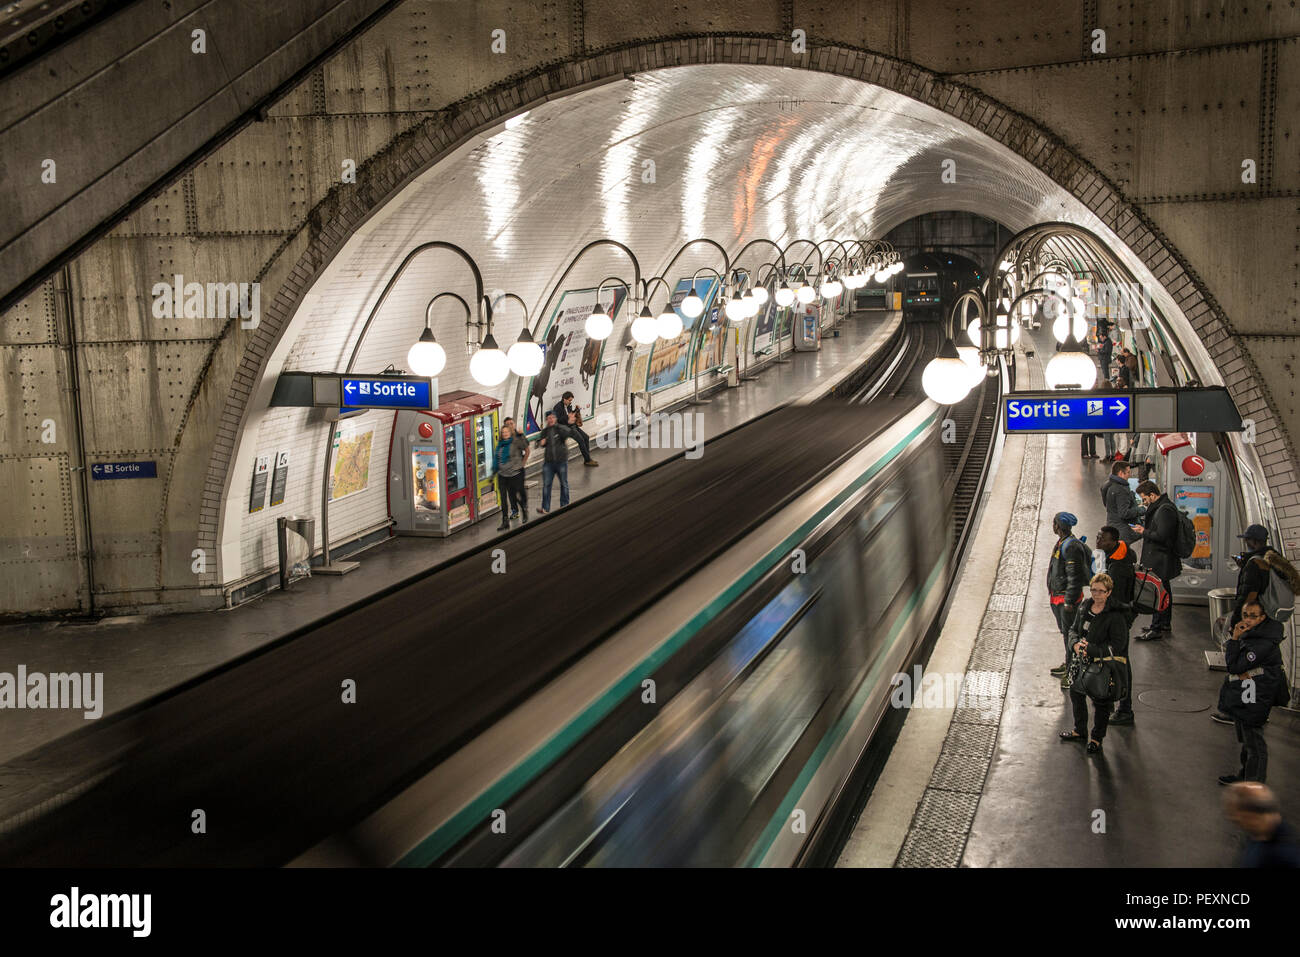 La station de métro, Paris, France Banque D'Images